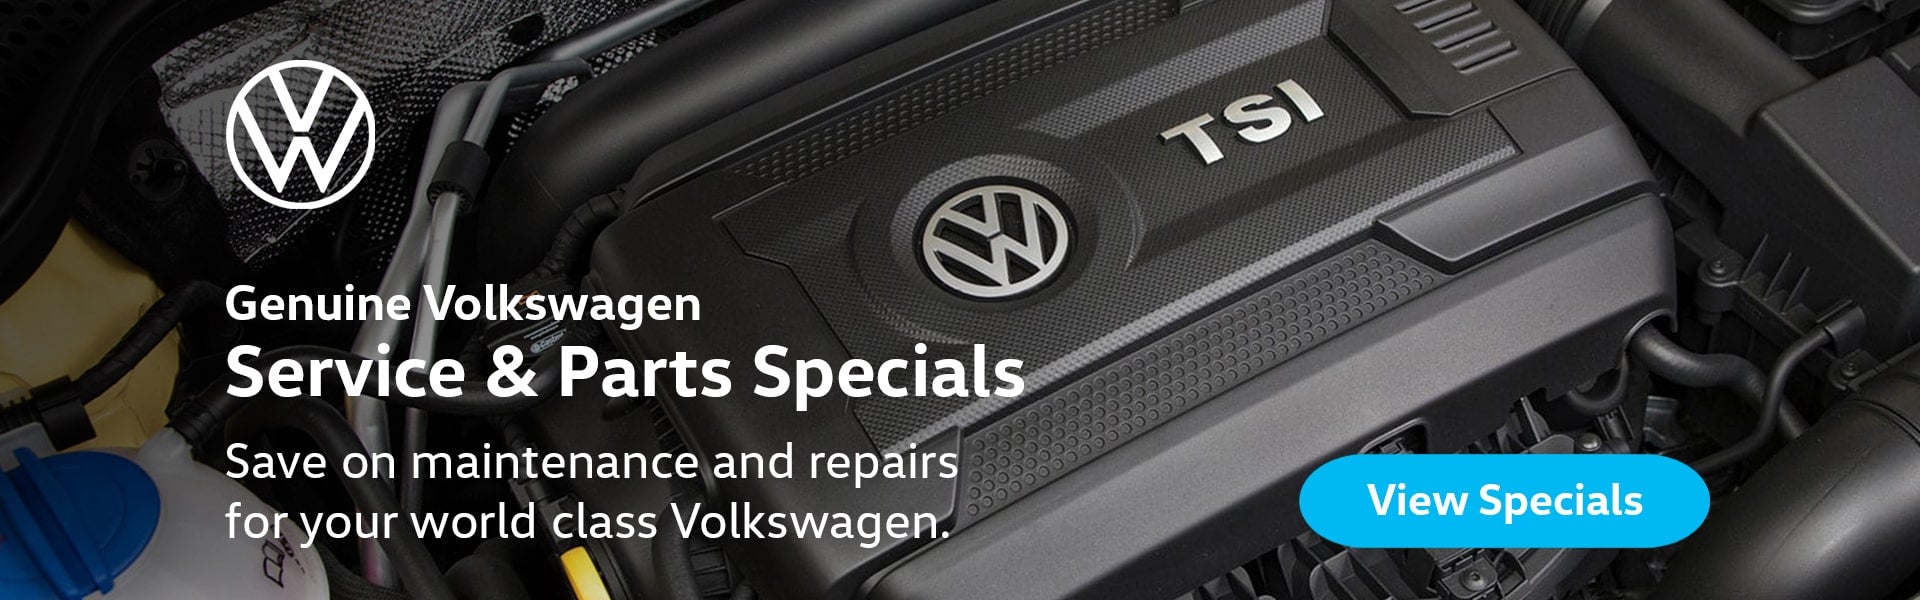 VW Service & Parts Specials